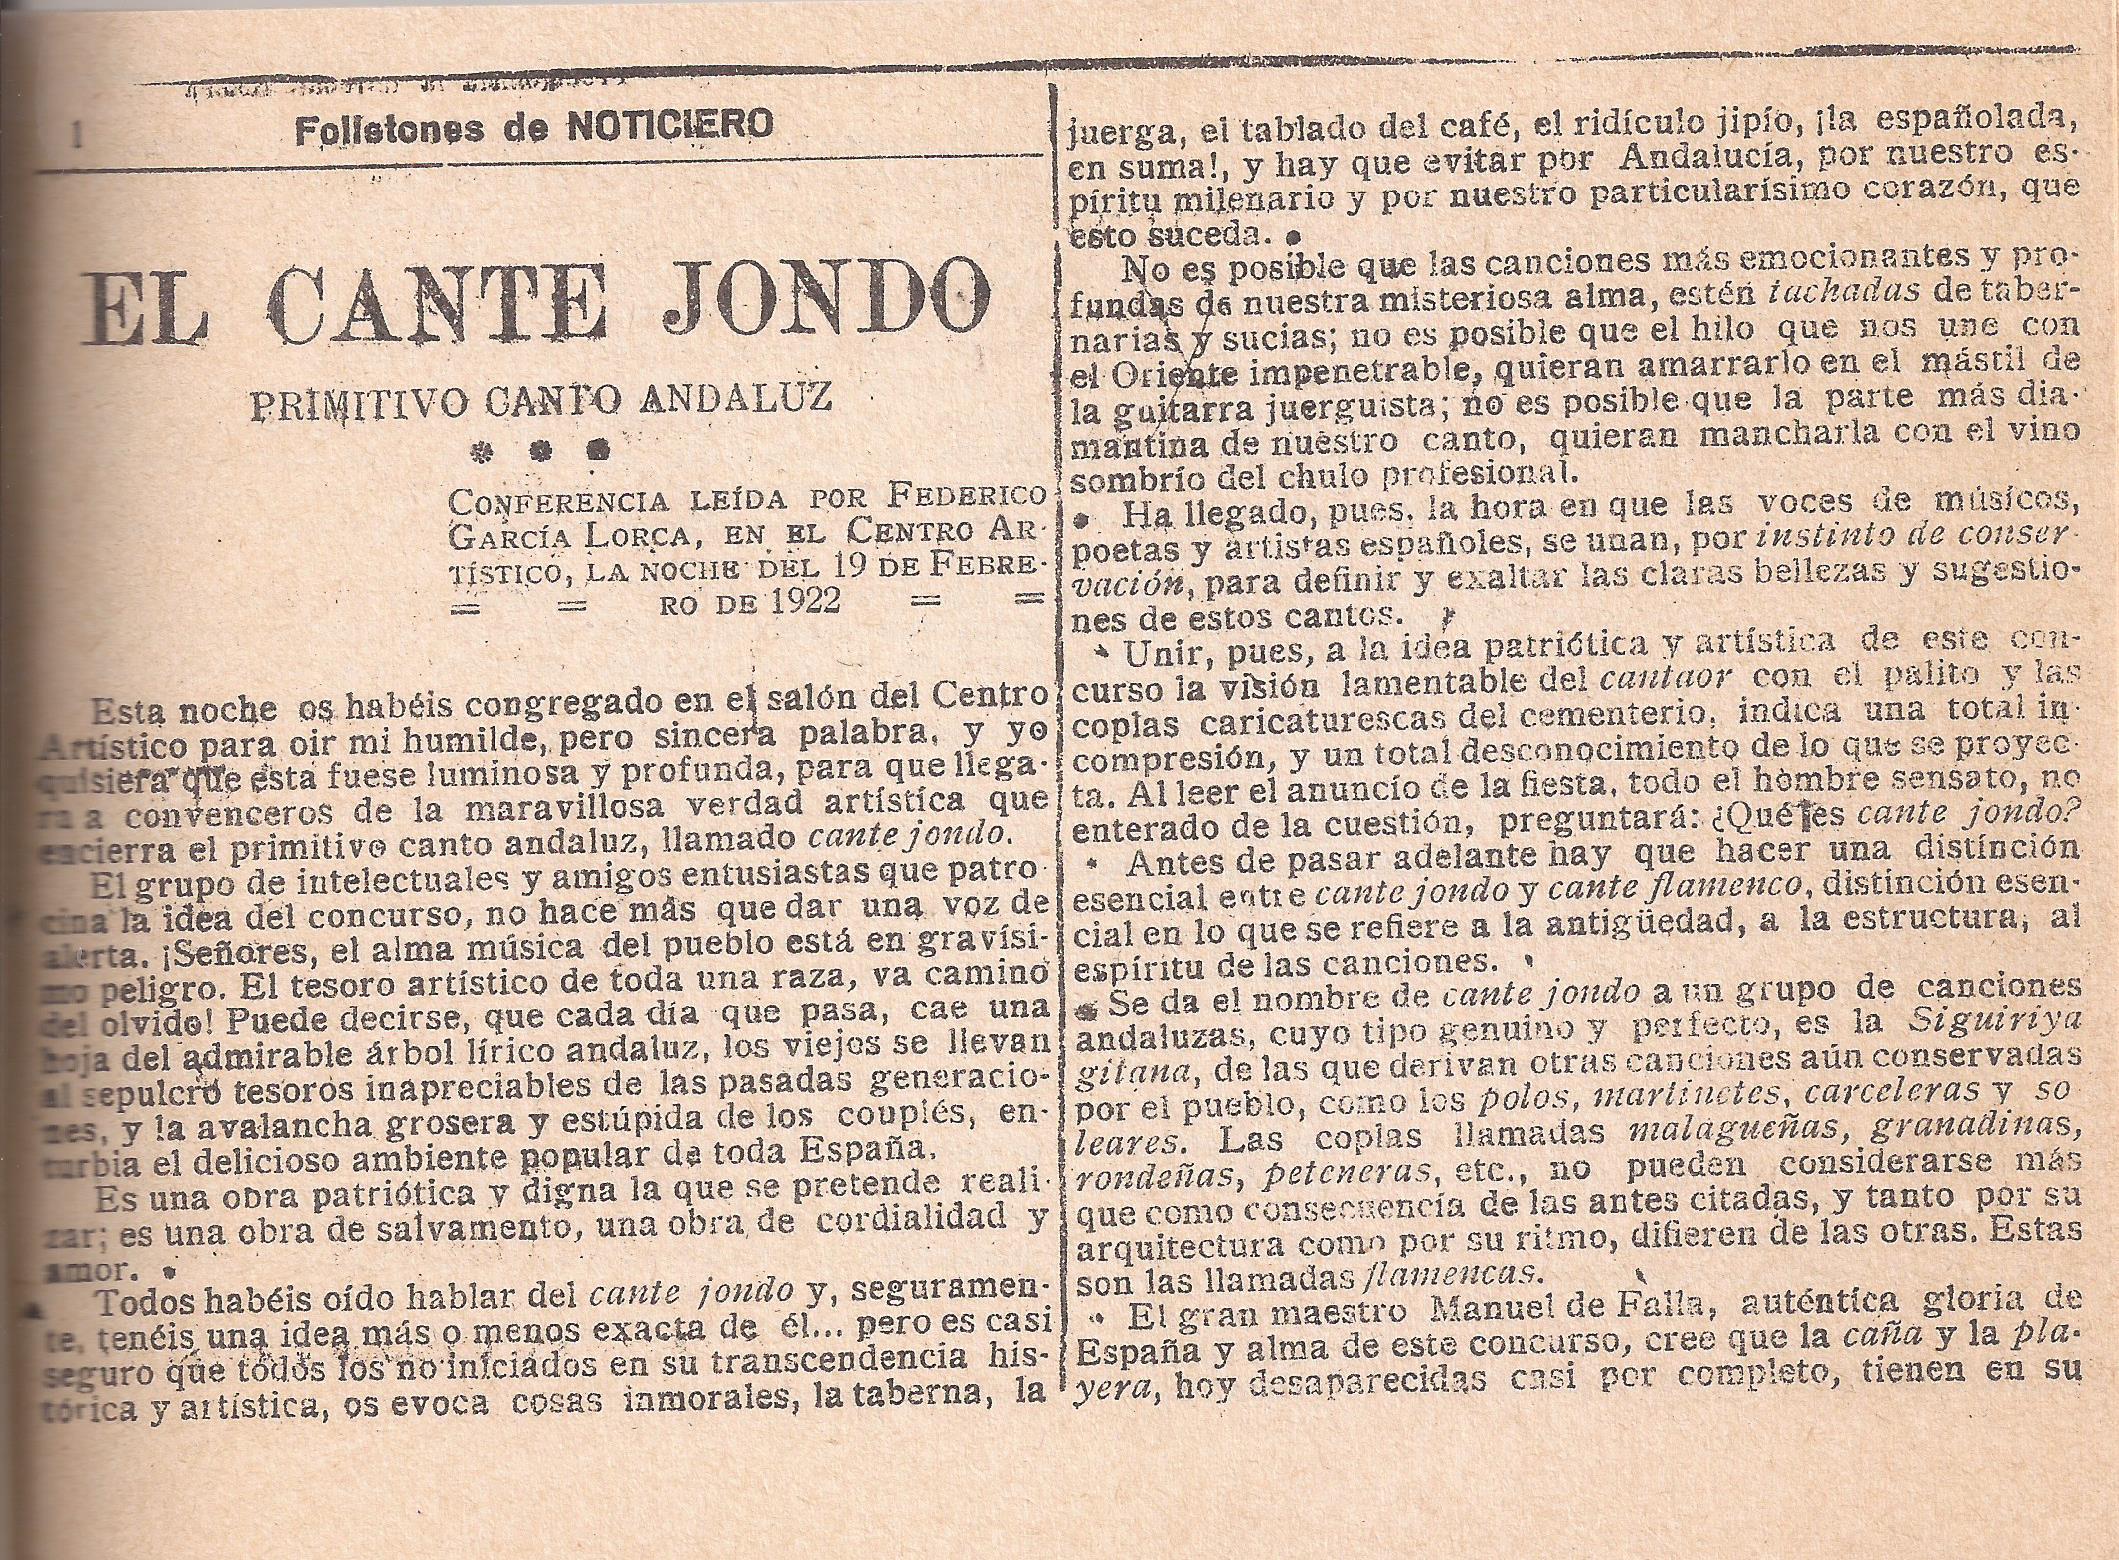 Primera entrega del folletón con la conferencia de Lorca sobre el cante jondo pronunciada en el Centro Artístico de Granada.